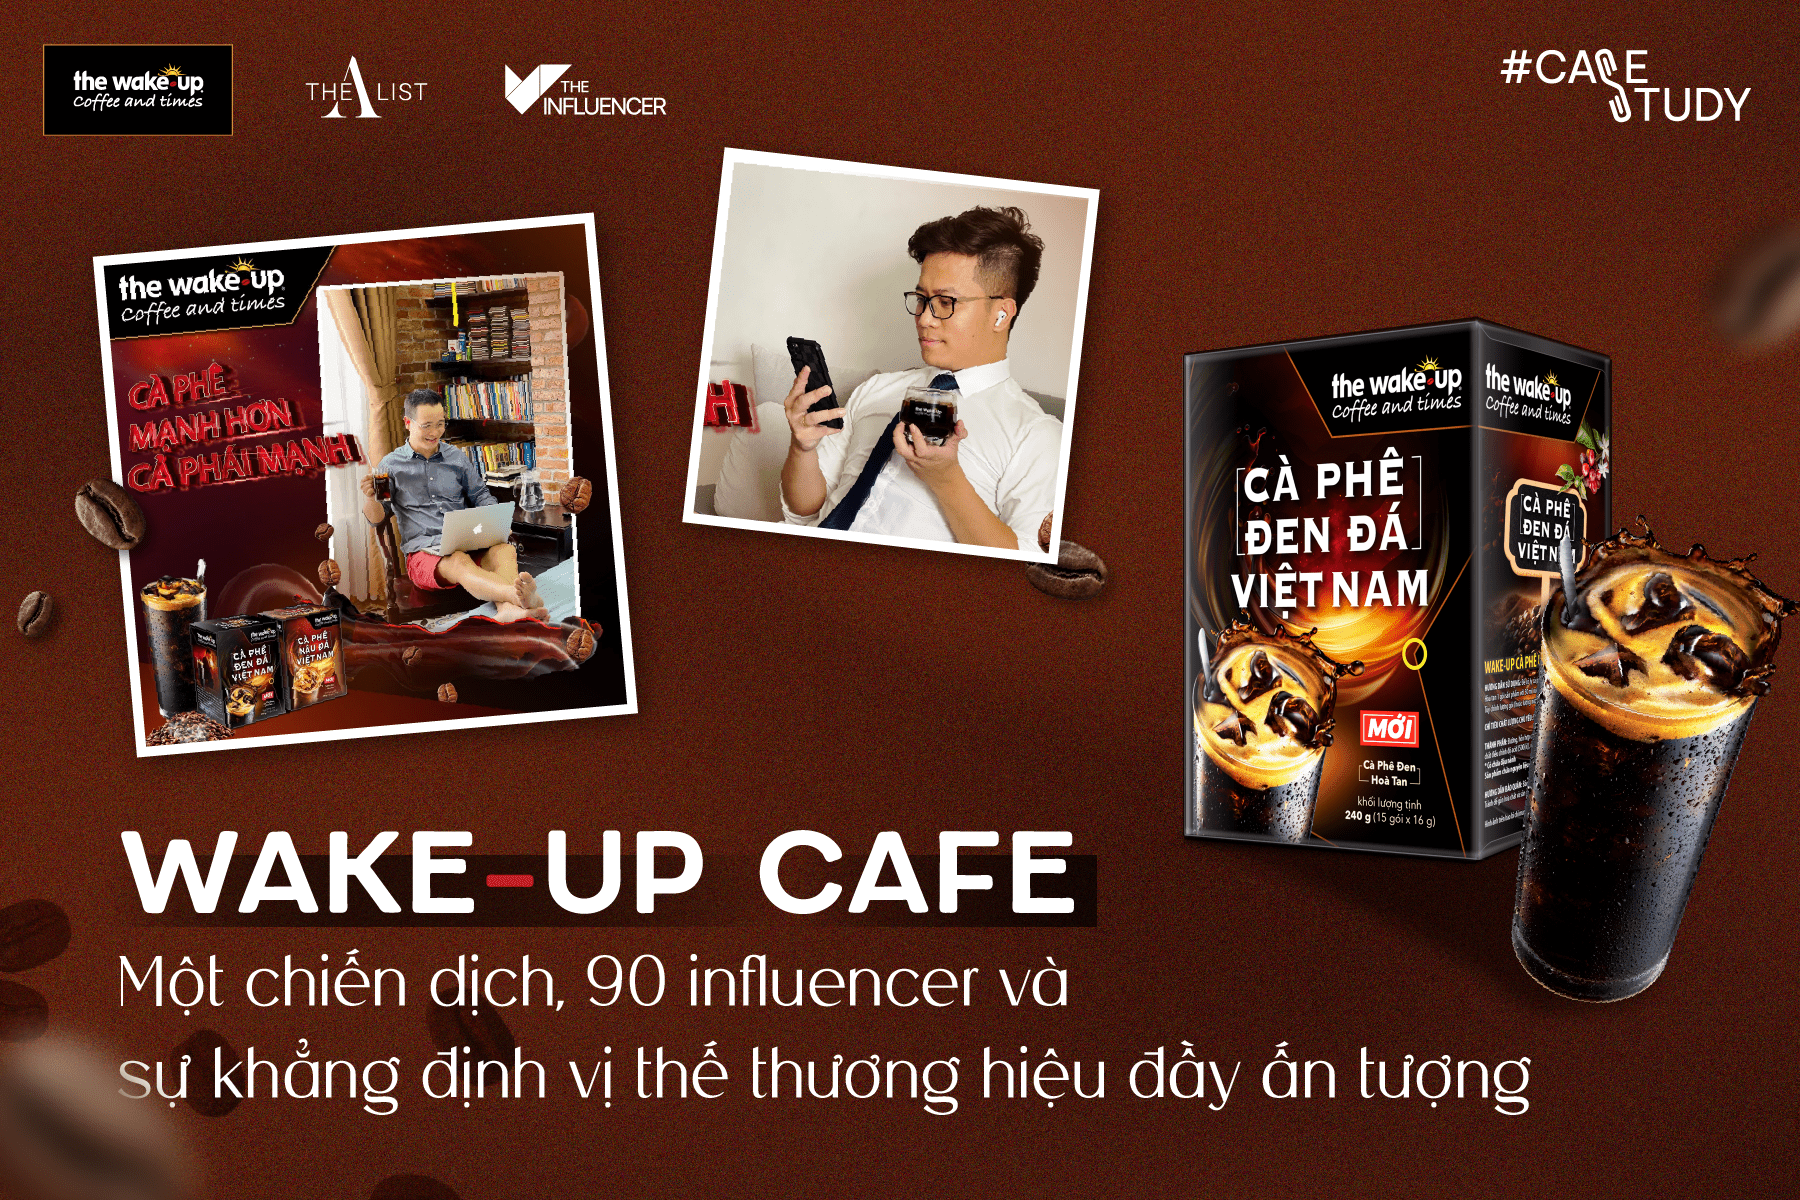 #Casestudy: Wake-up Cafe - Một chiến dịch, 90 influencer và sự khẳng định vị thế thương hiệu đầy ấn tượng